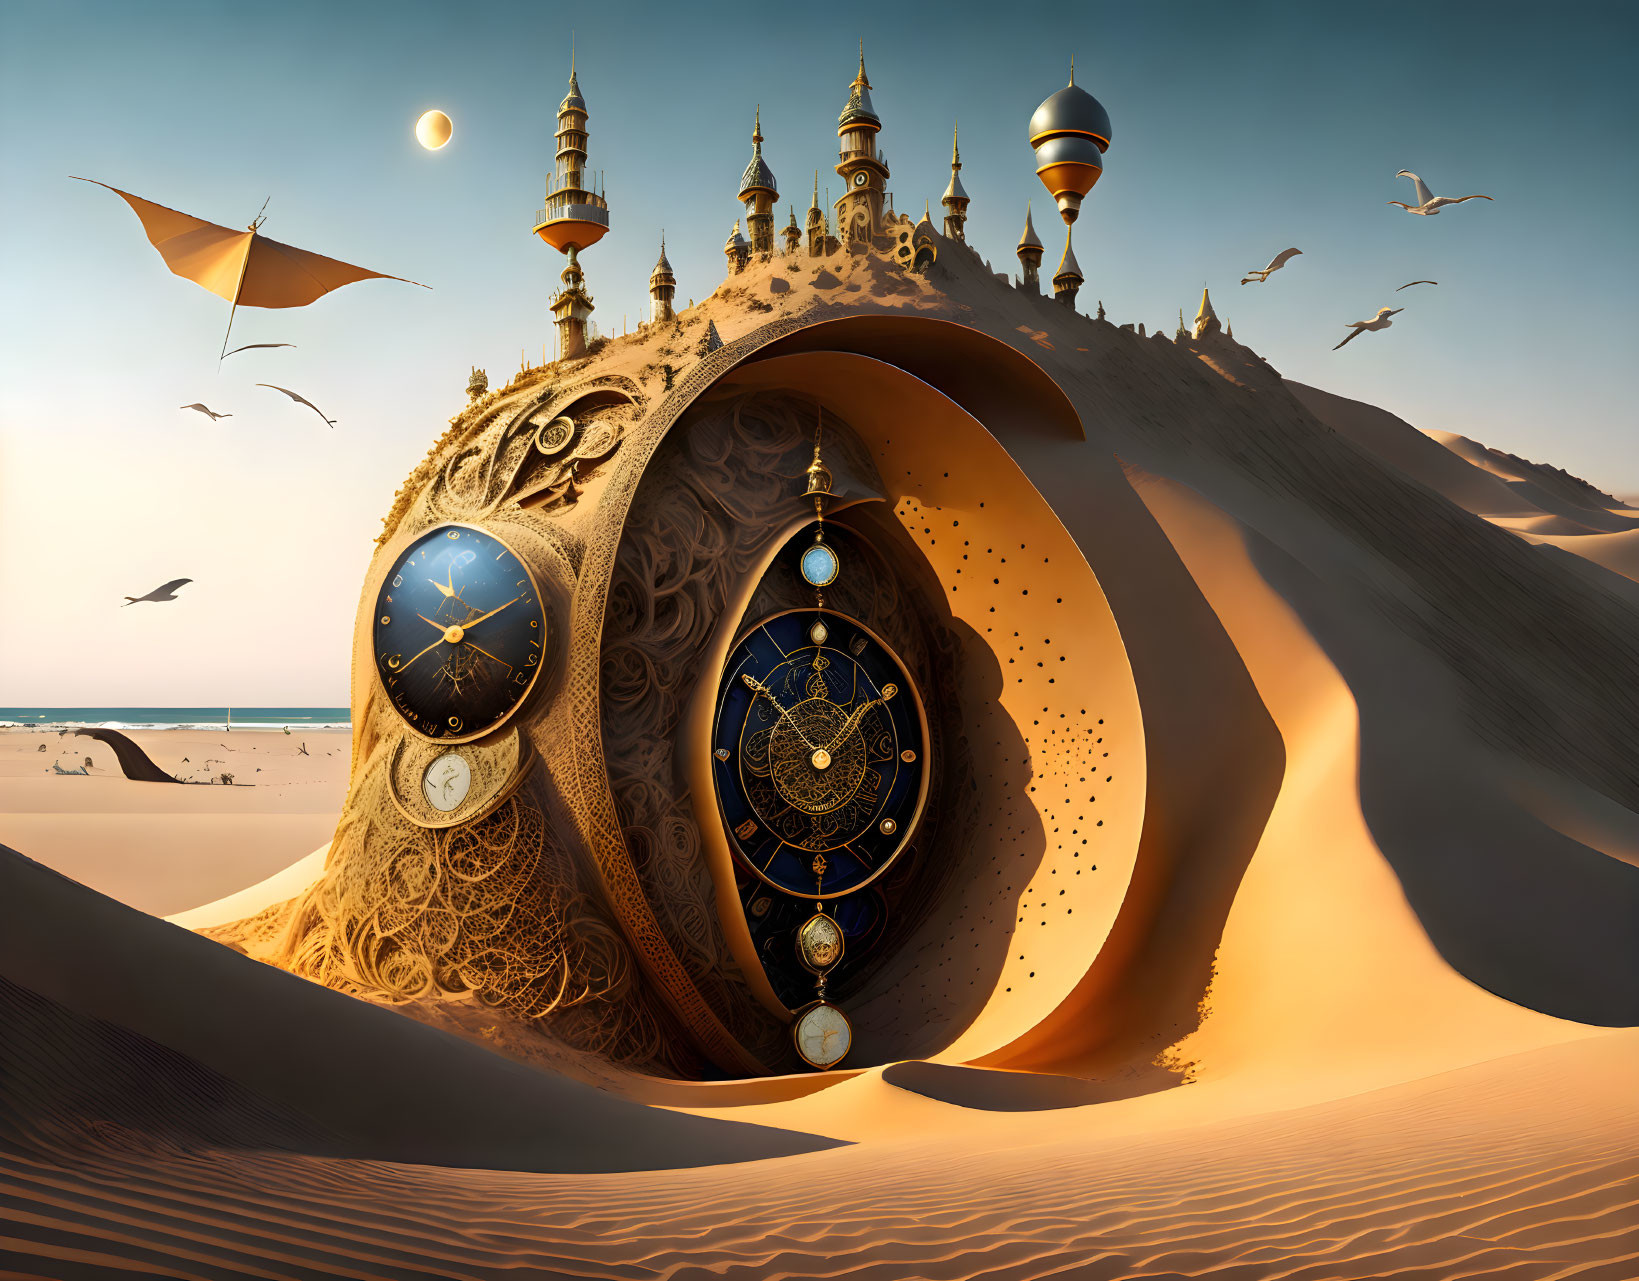 Sand-clock on the beach